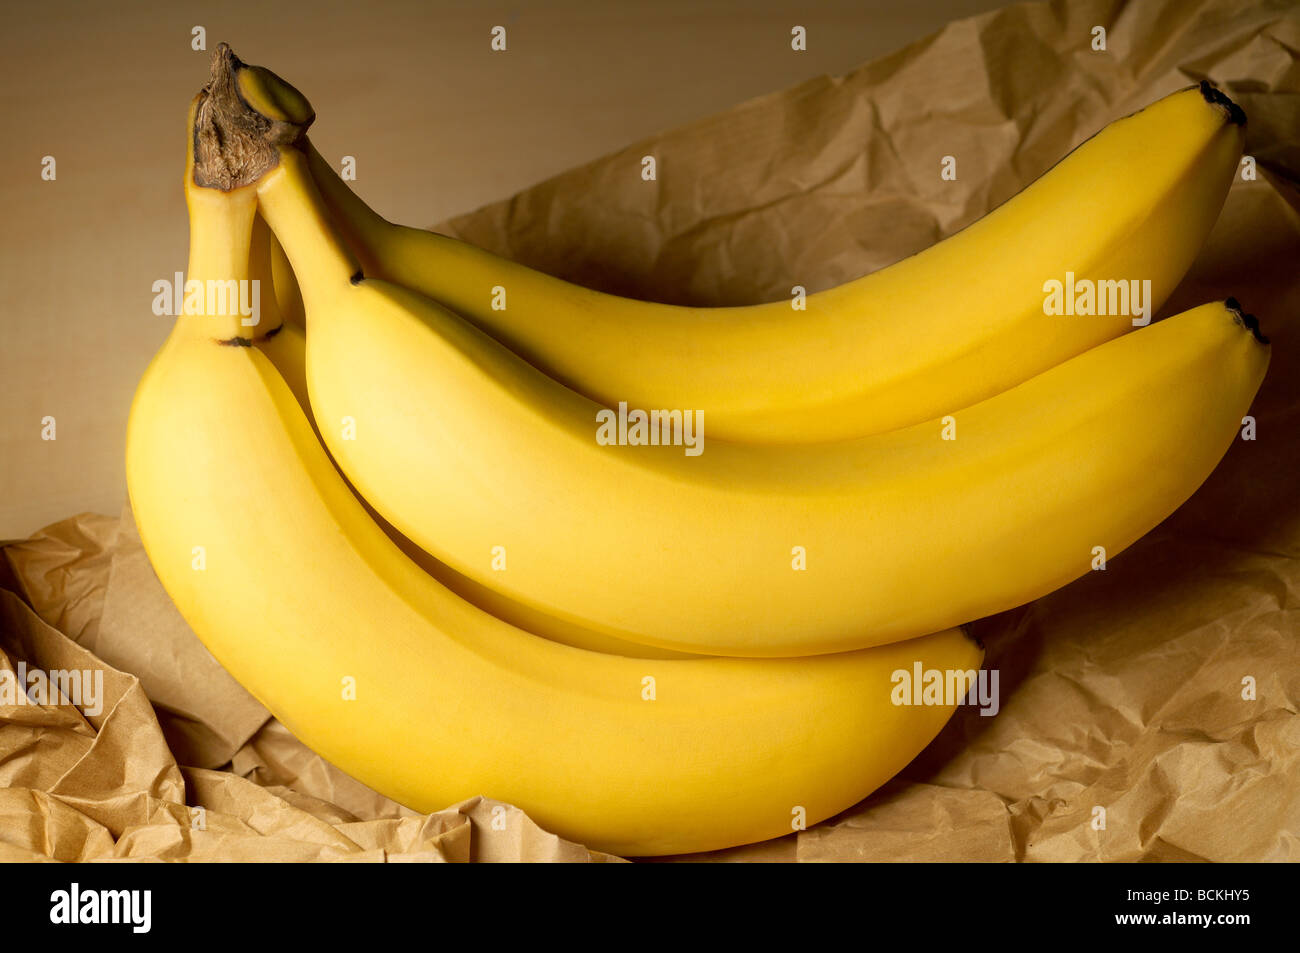 Bananas on brown paper bag Stock Photo